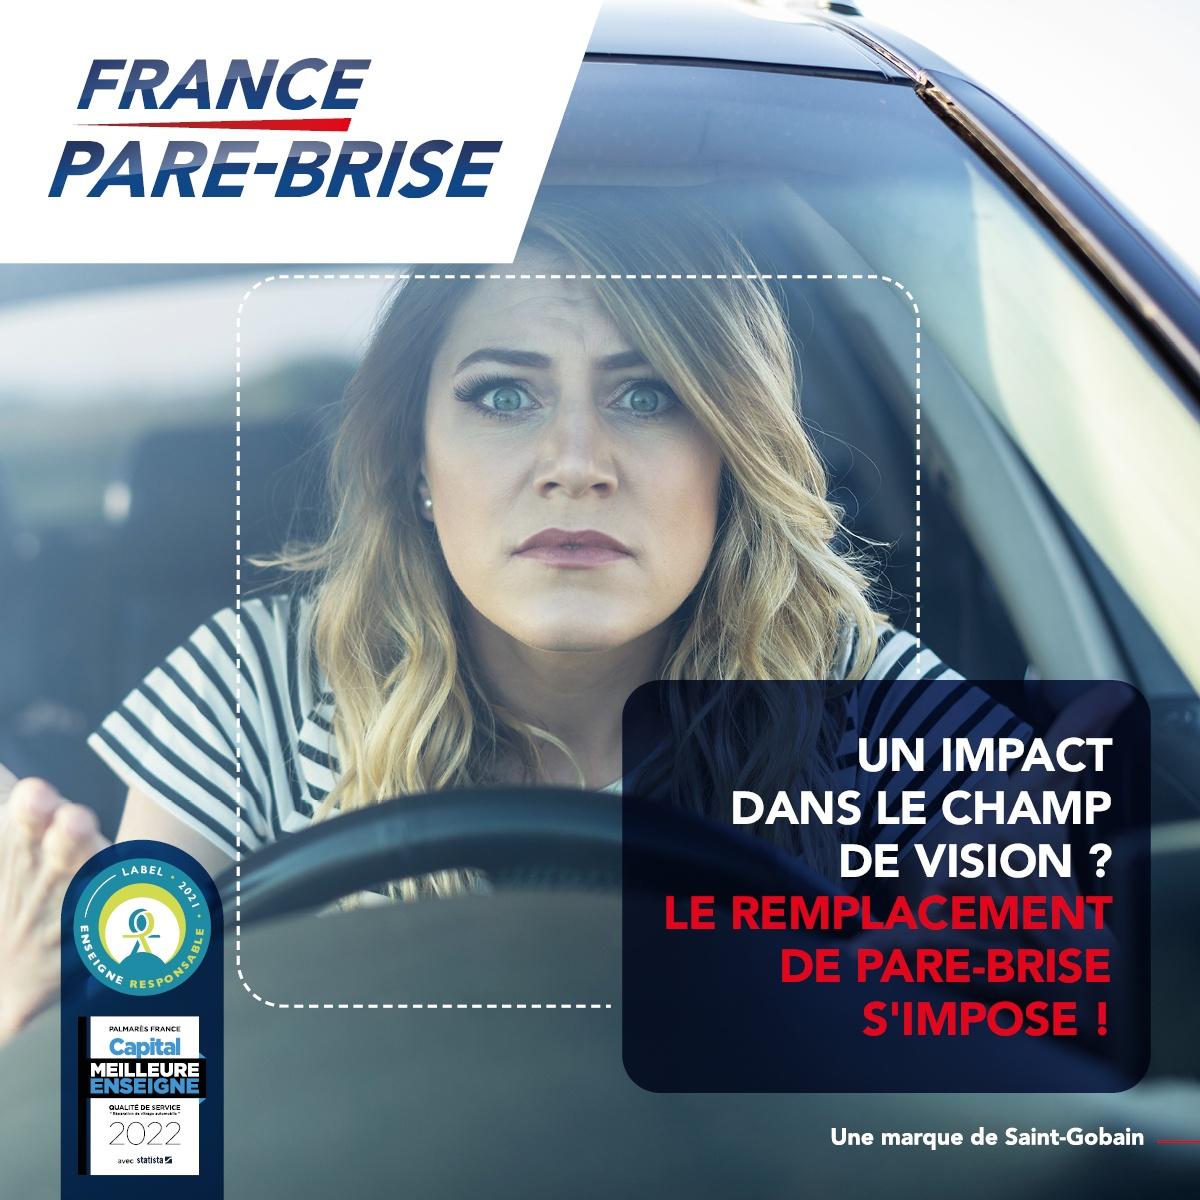 France Pare-brise Liffré